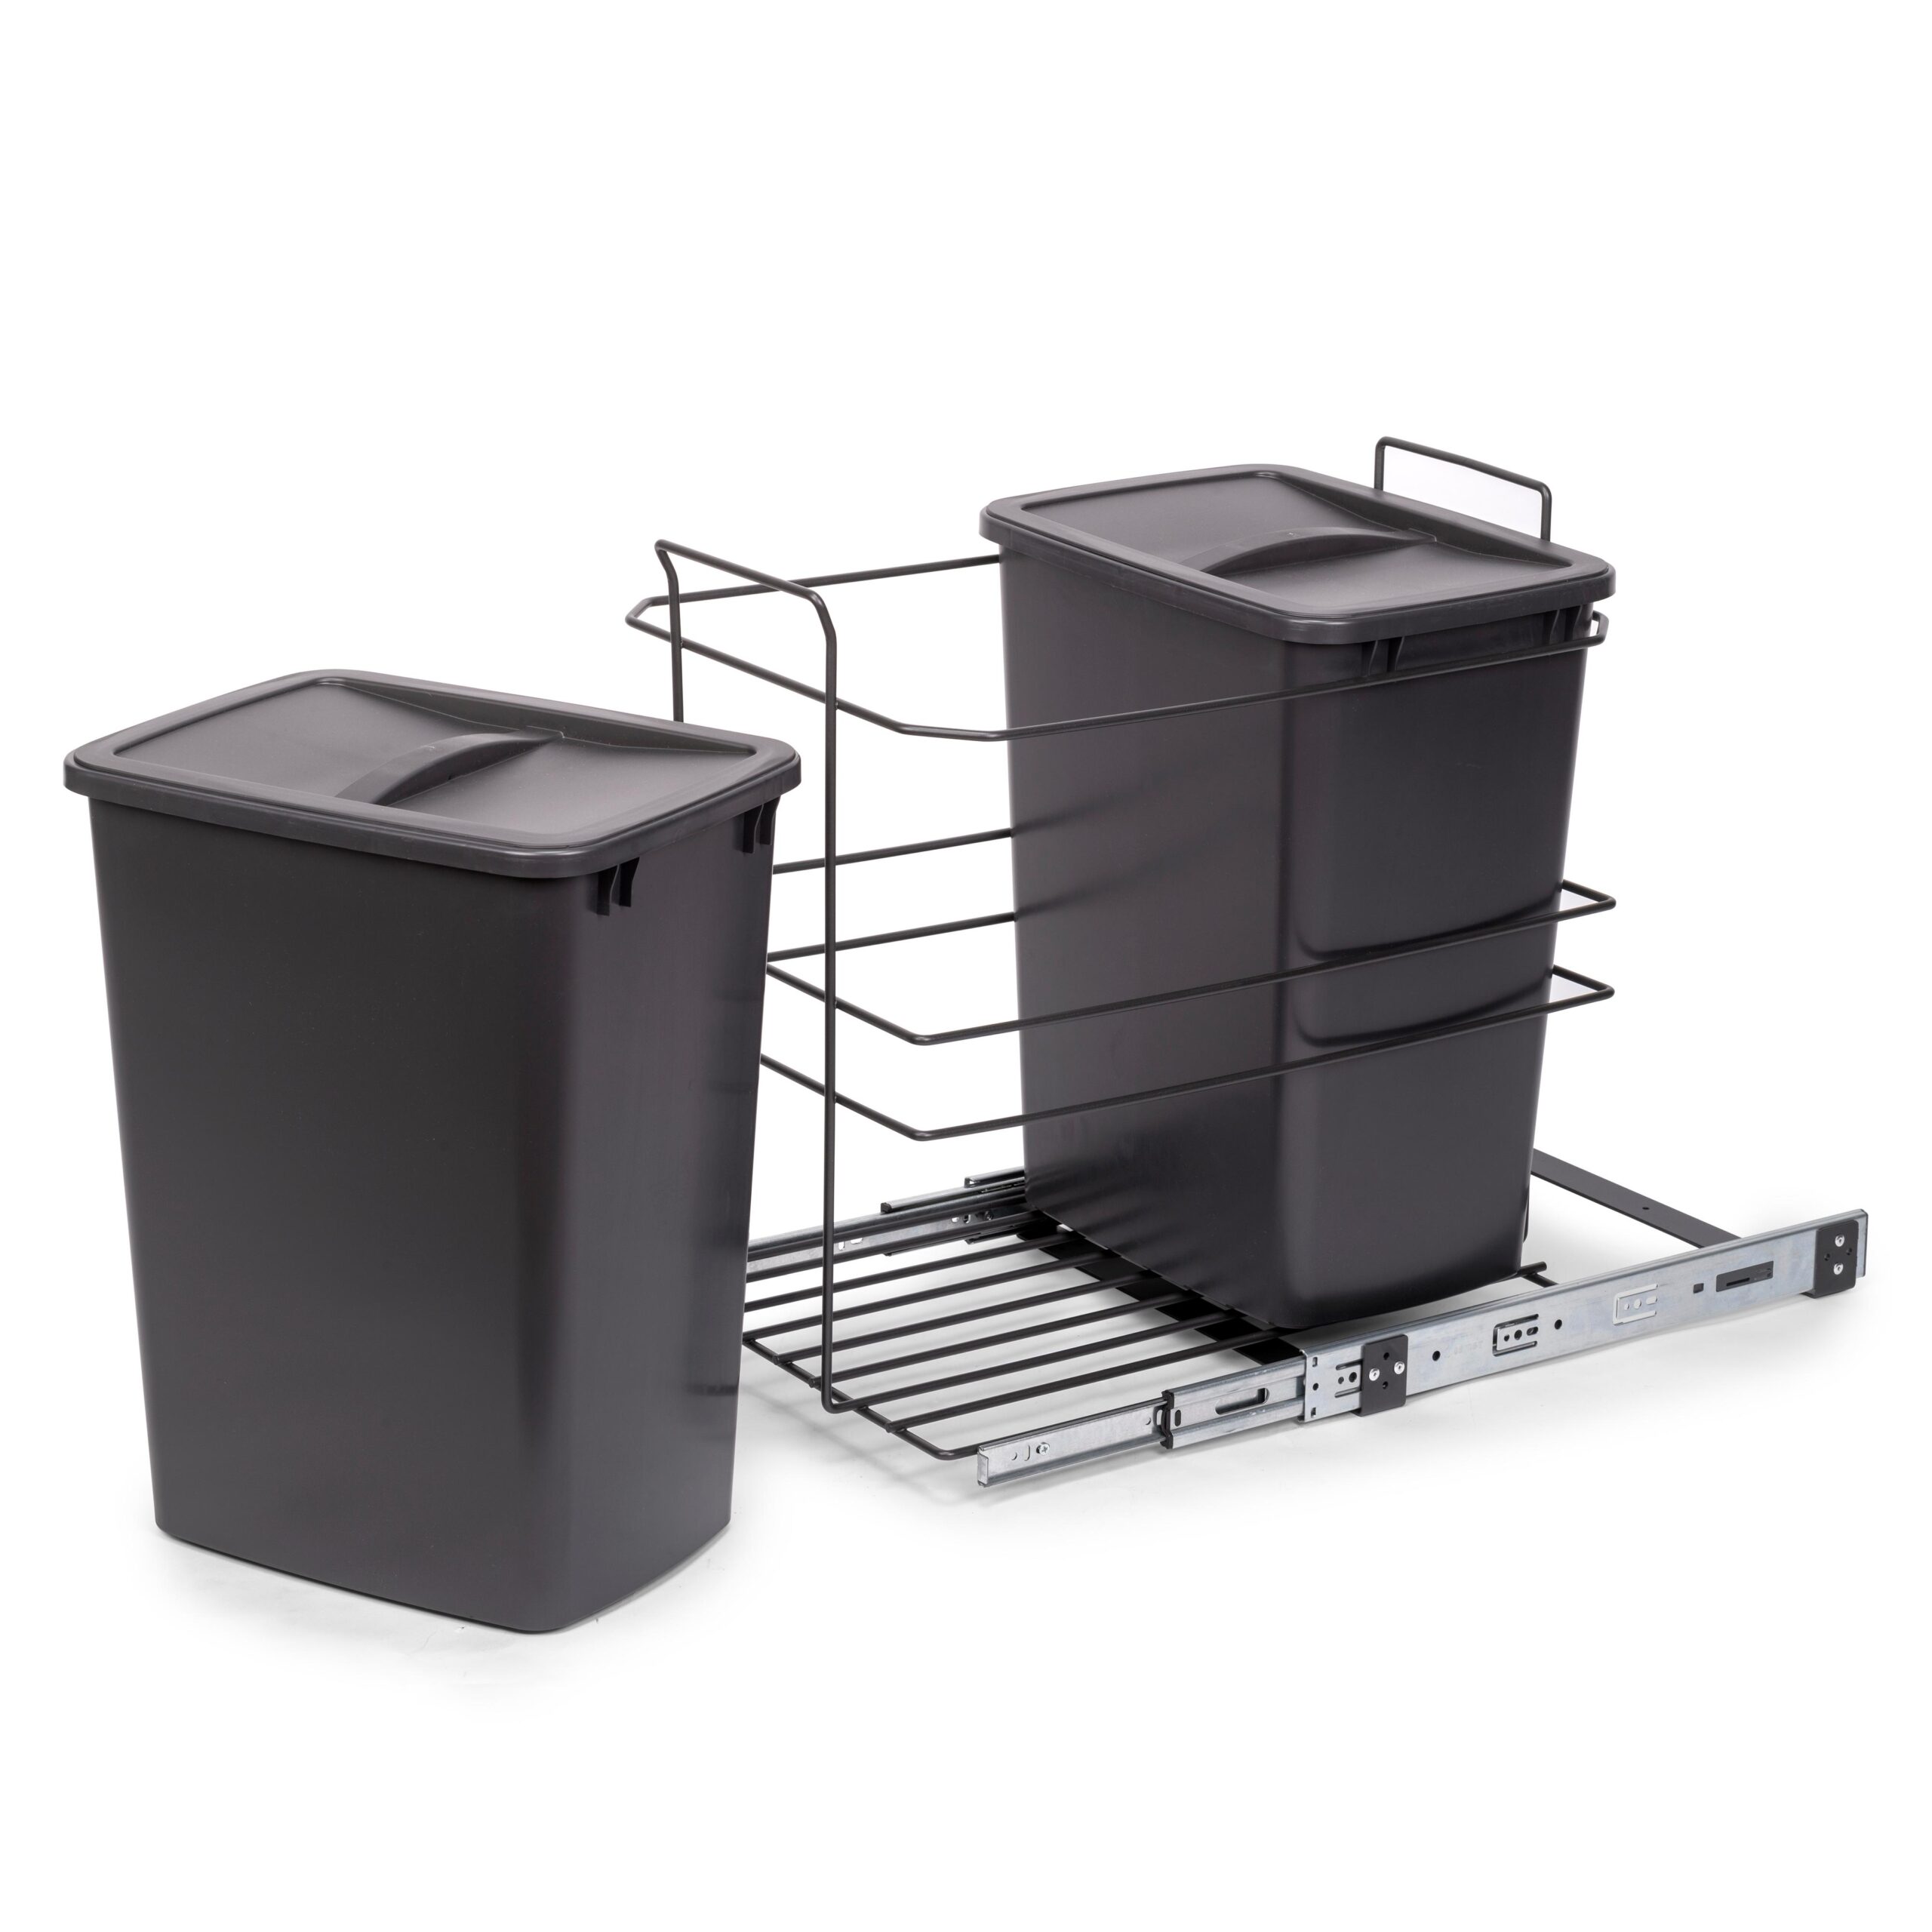 Baldes do lixo de reciclagem para cozinha, fixação inferior, extração  manual, aço e plástico, cinza antracite.